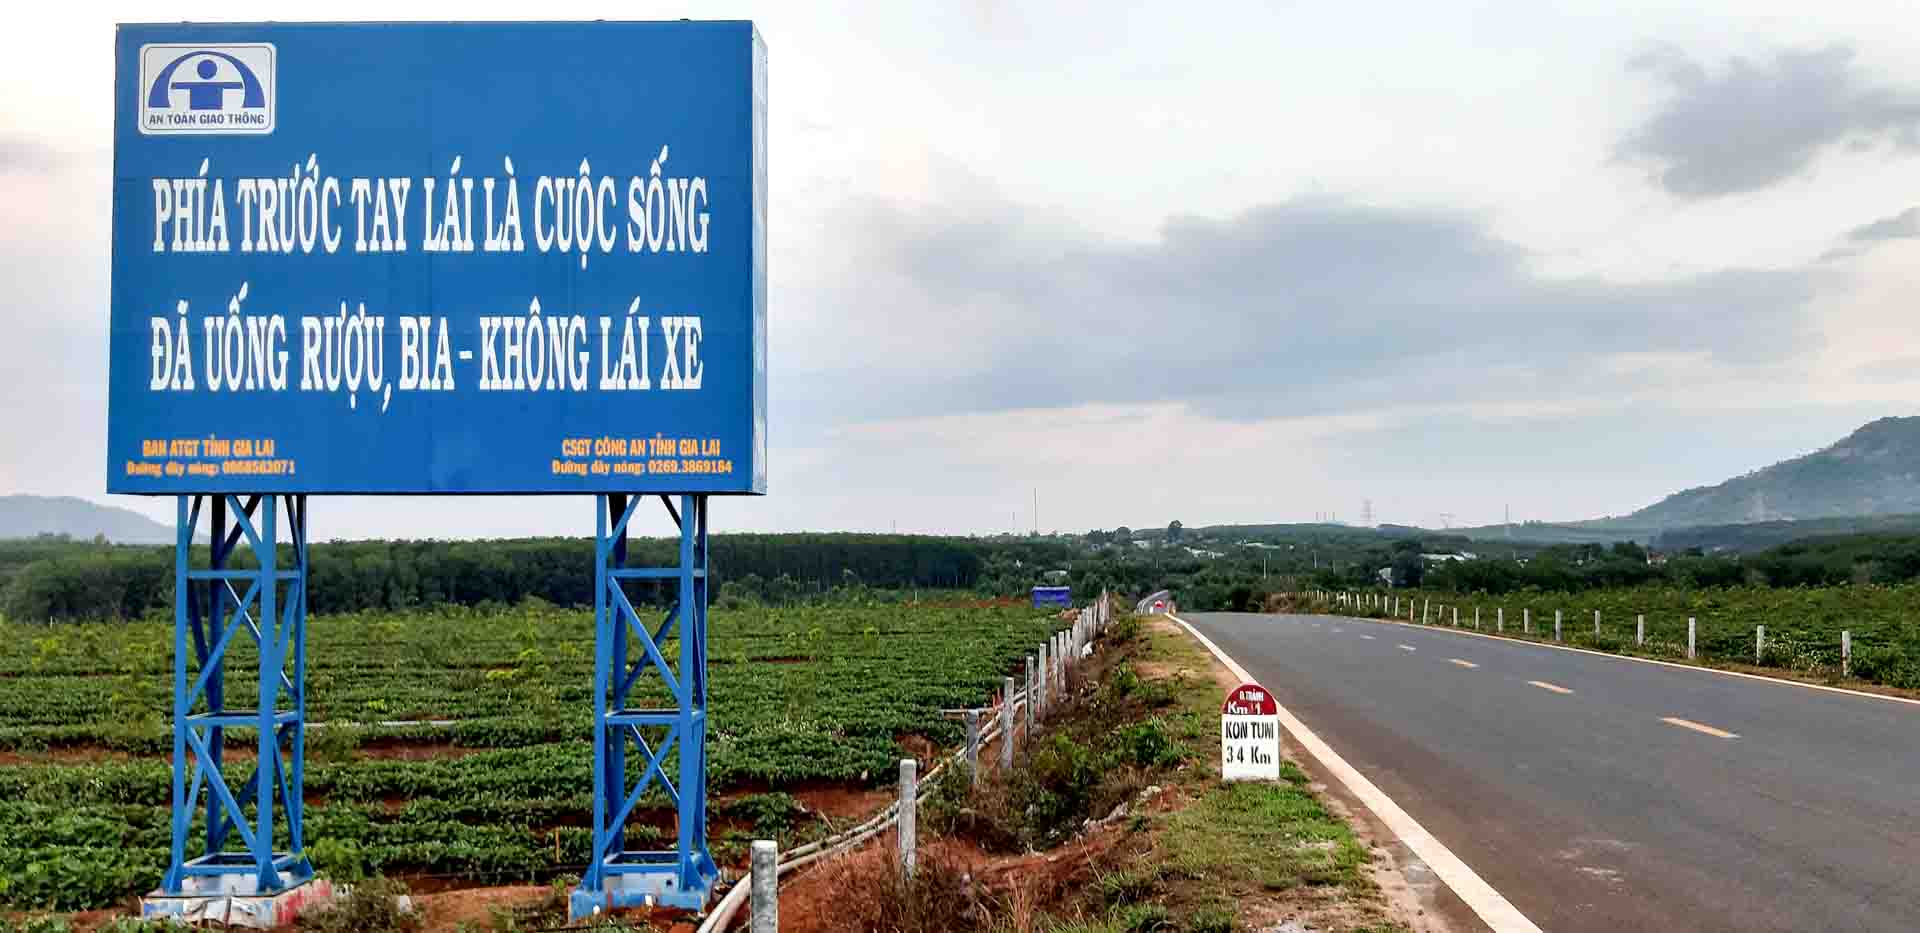 Số điện thoại CSGT công an tỉnh Gia Lai